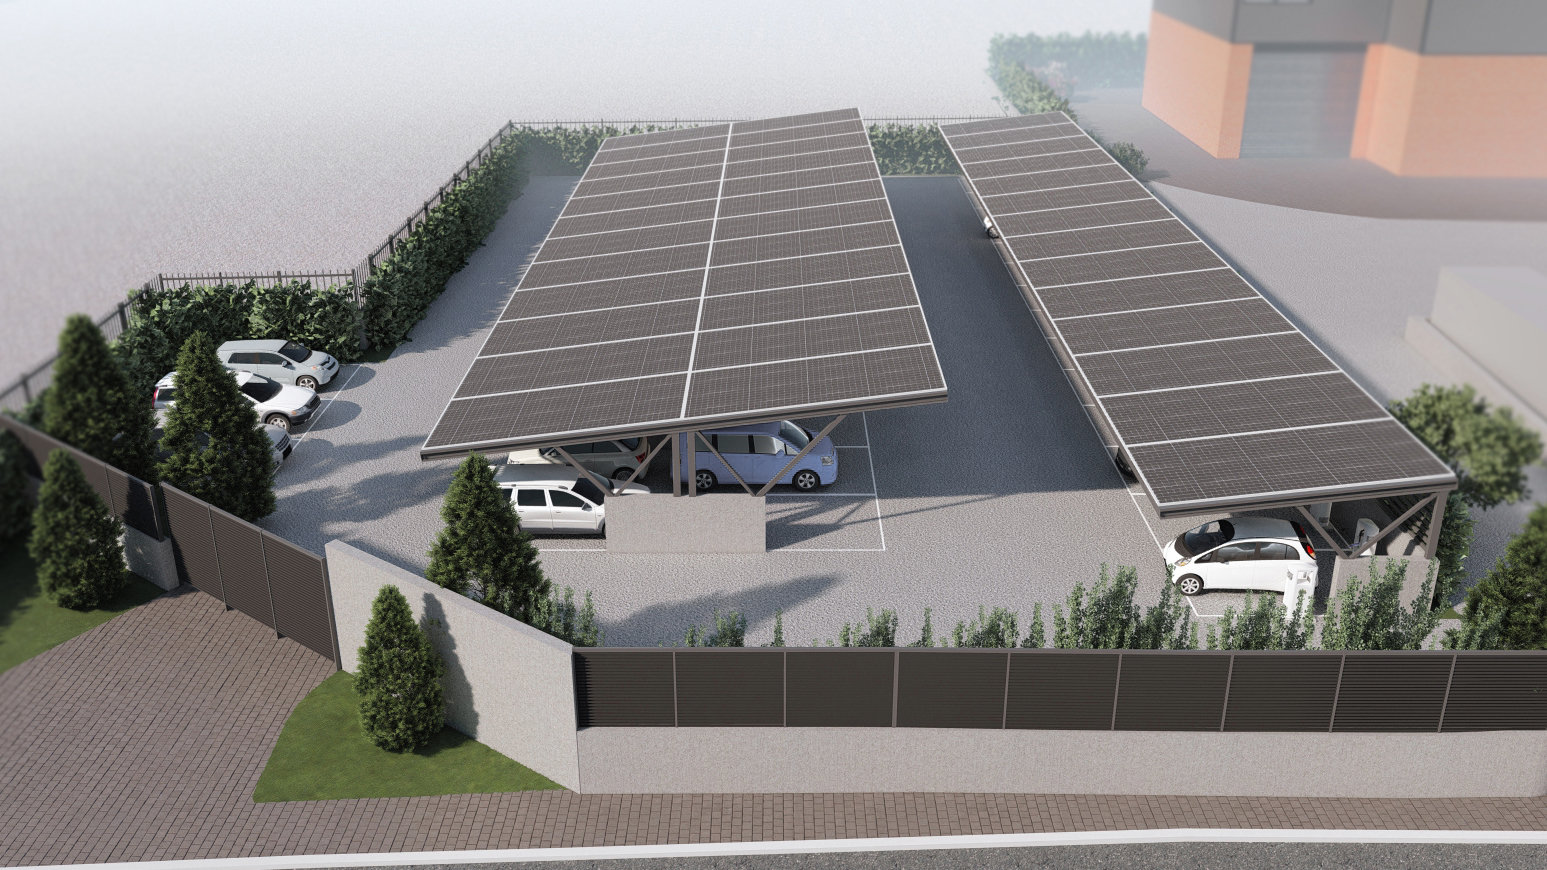 Τα ηλιακά καλύμματα στάθμευσης θα μειώσουν την άμεση έκθεση των οχημάτων στο φως του ήλιου προστατεύοντας τόσο τα οχήματα όσο και το περιβάλλον